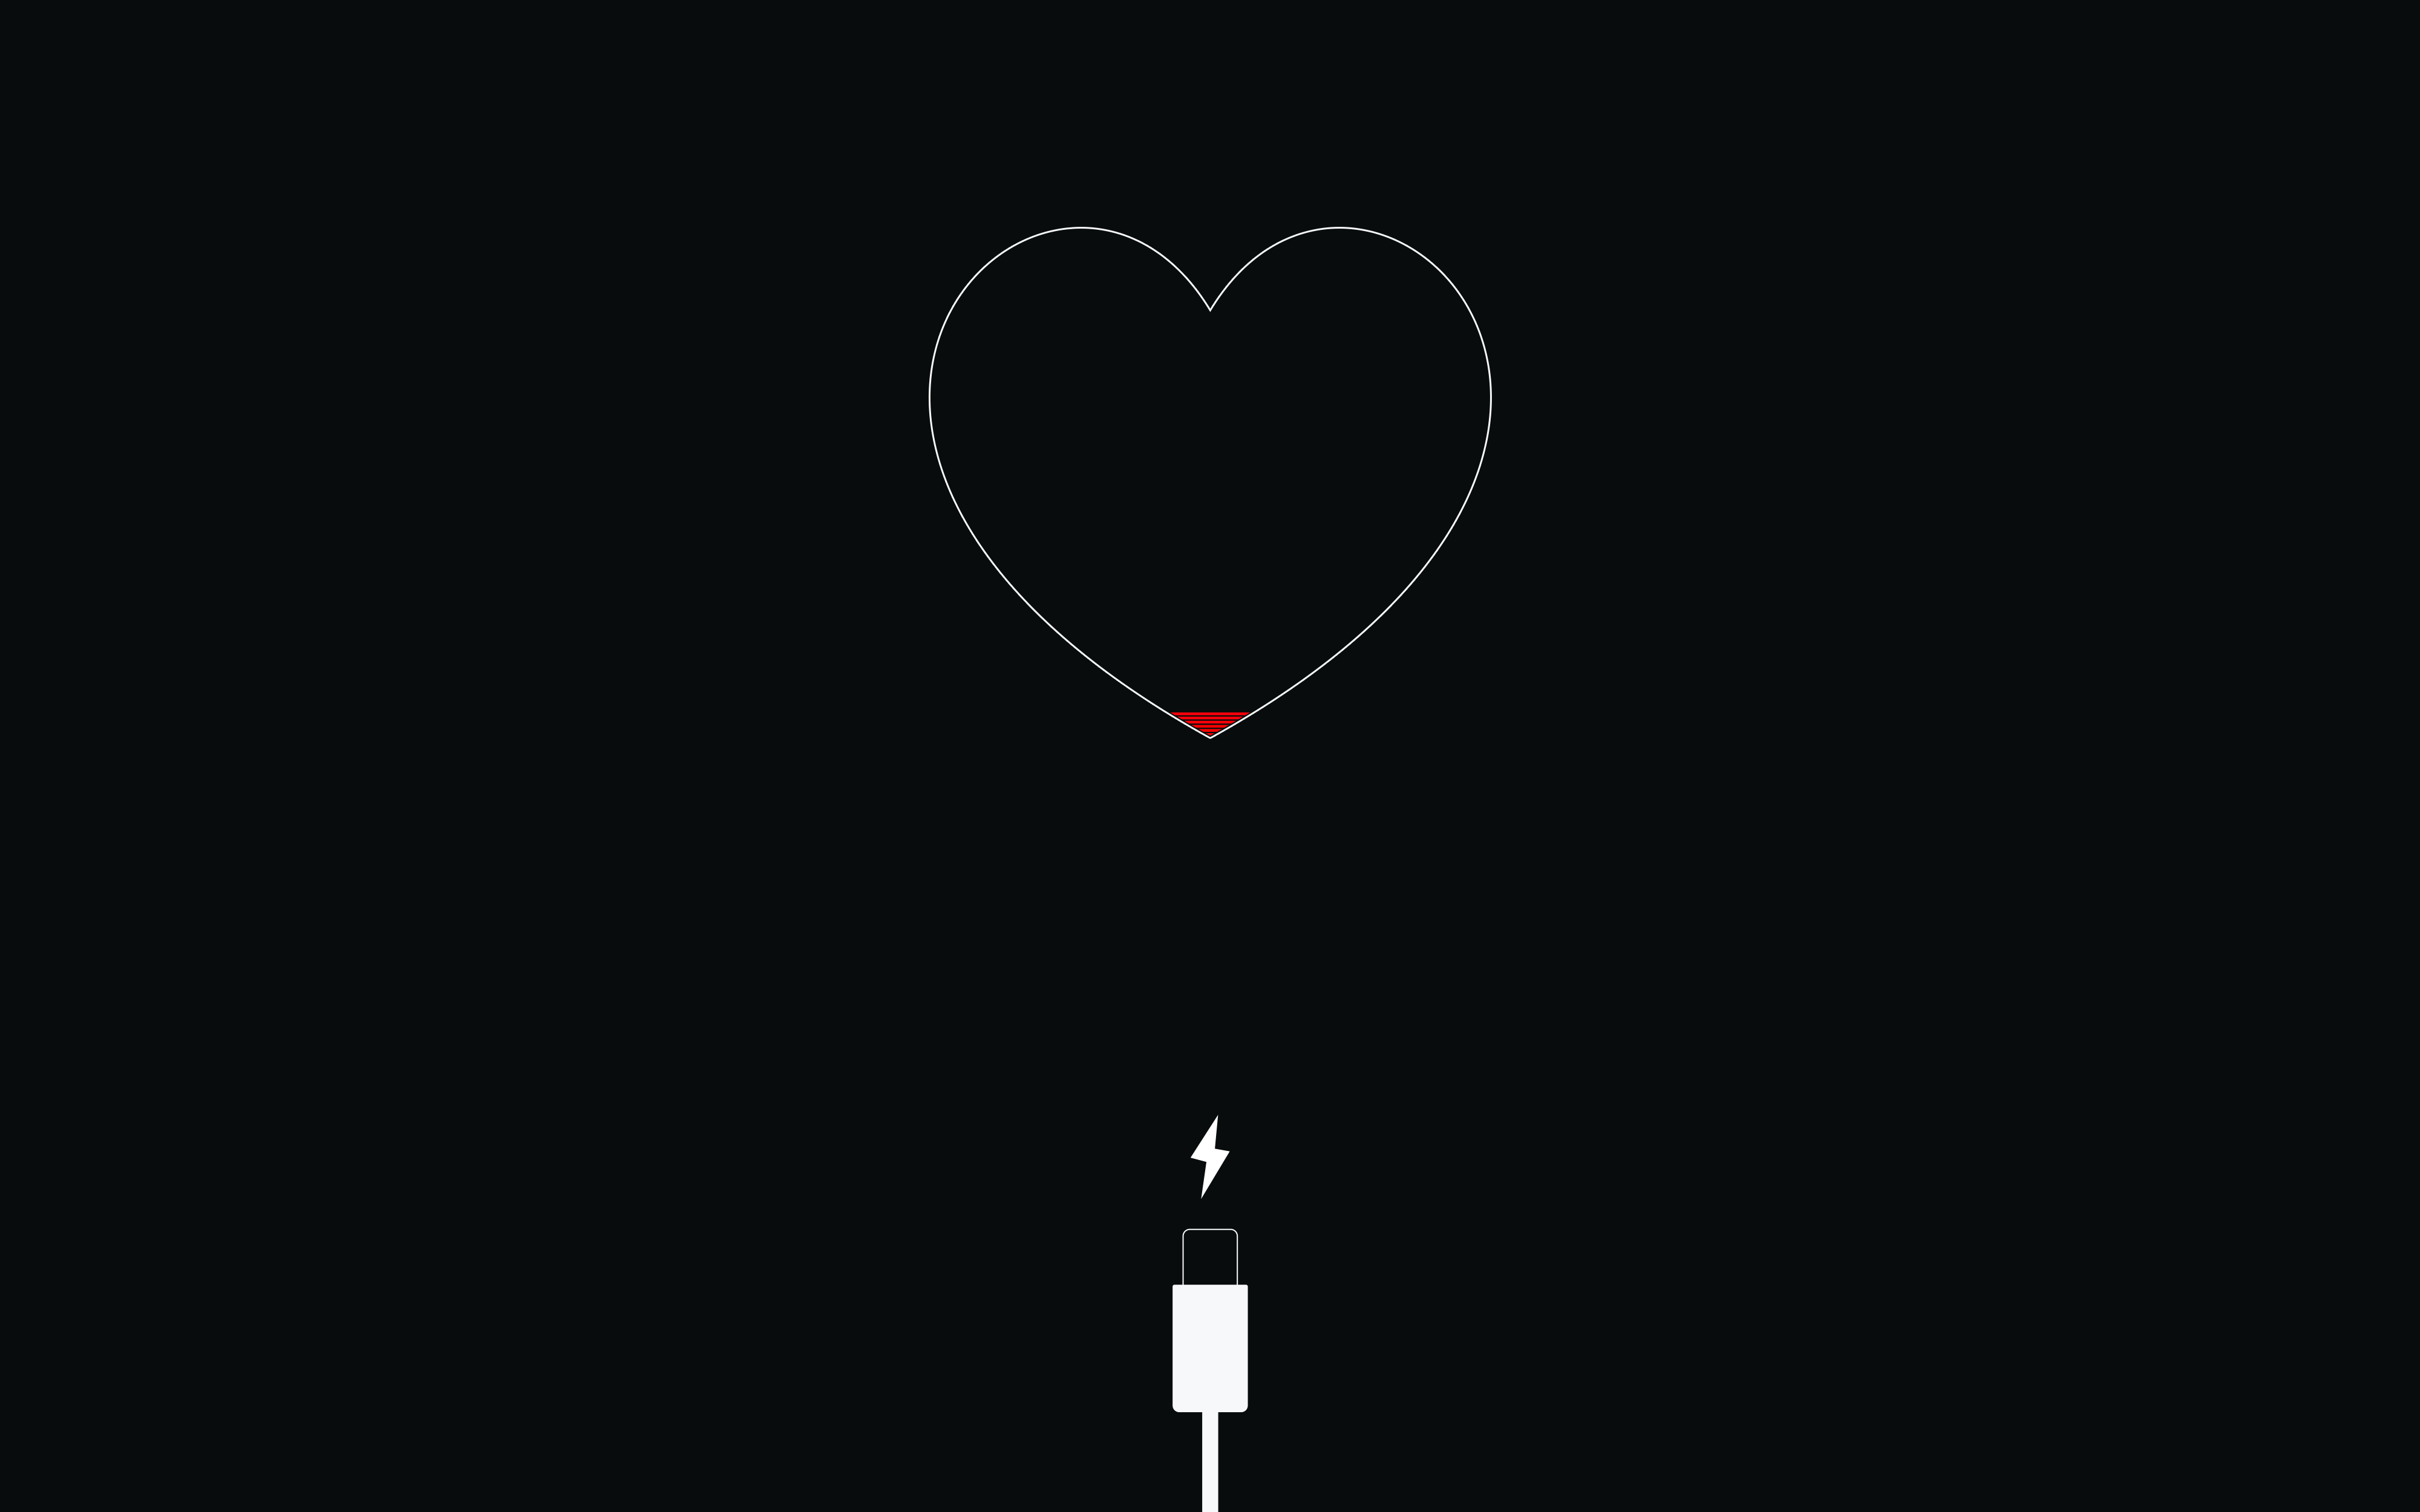 General 4000x2500 lightning artwork heart (design) minimalism digital art black background USB simple background loading